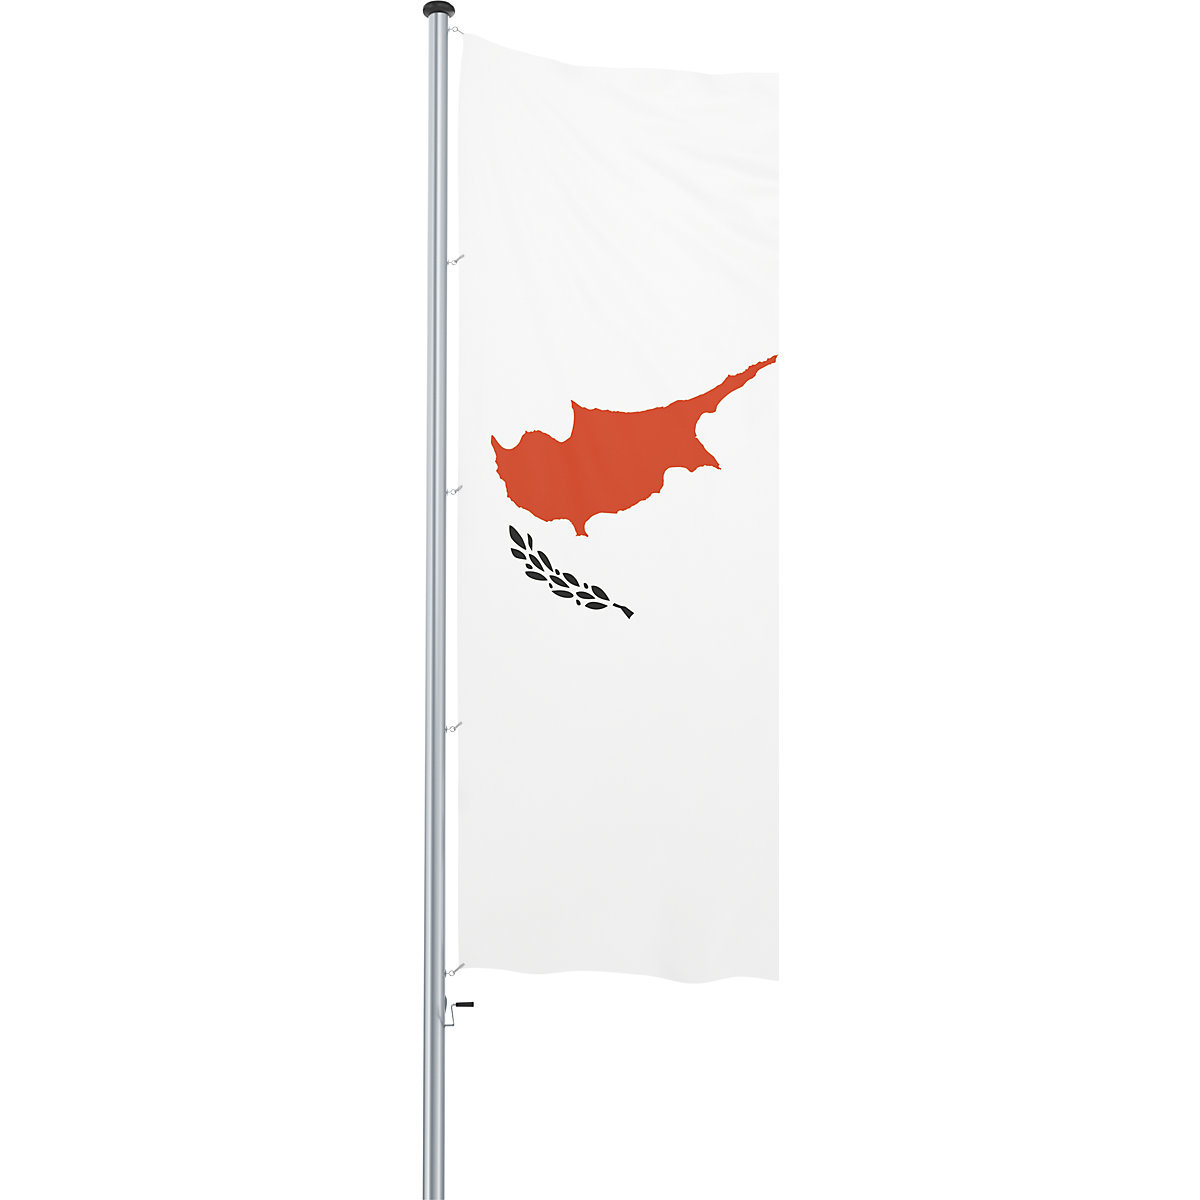 Mannus – Bandera para izar/bandera del país (Imagen del producto 54)